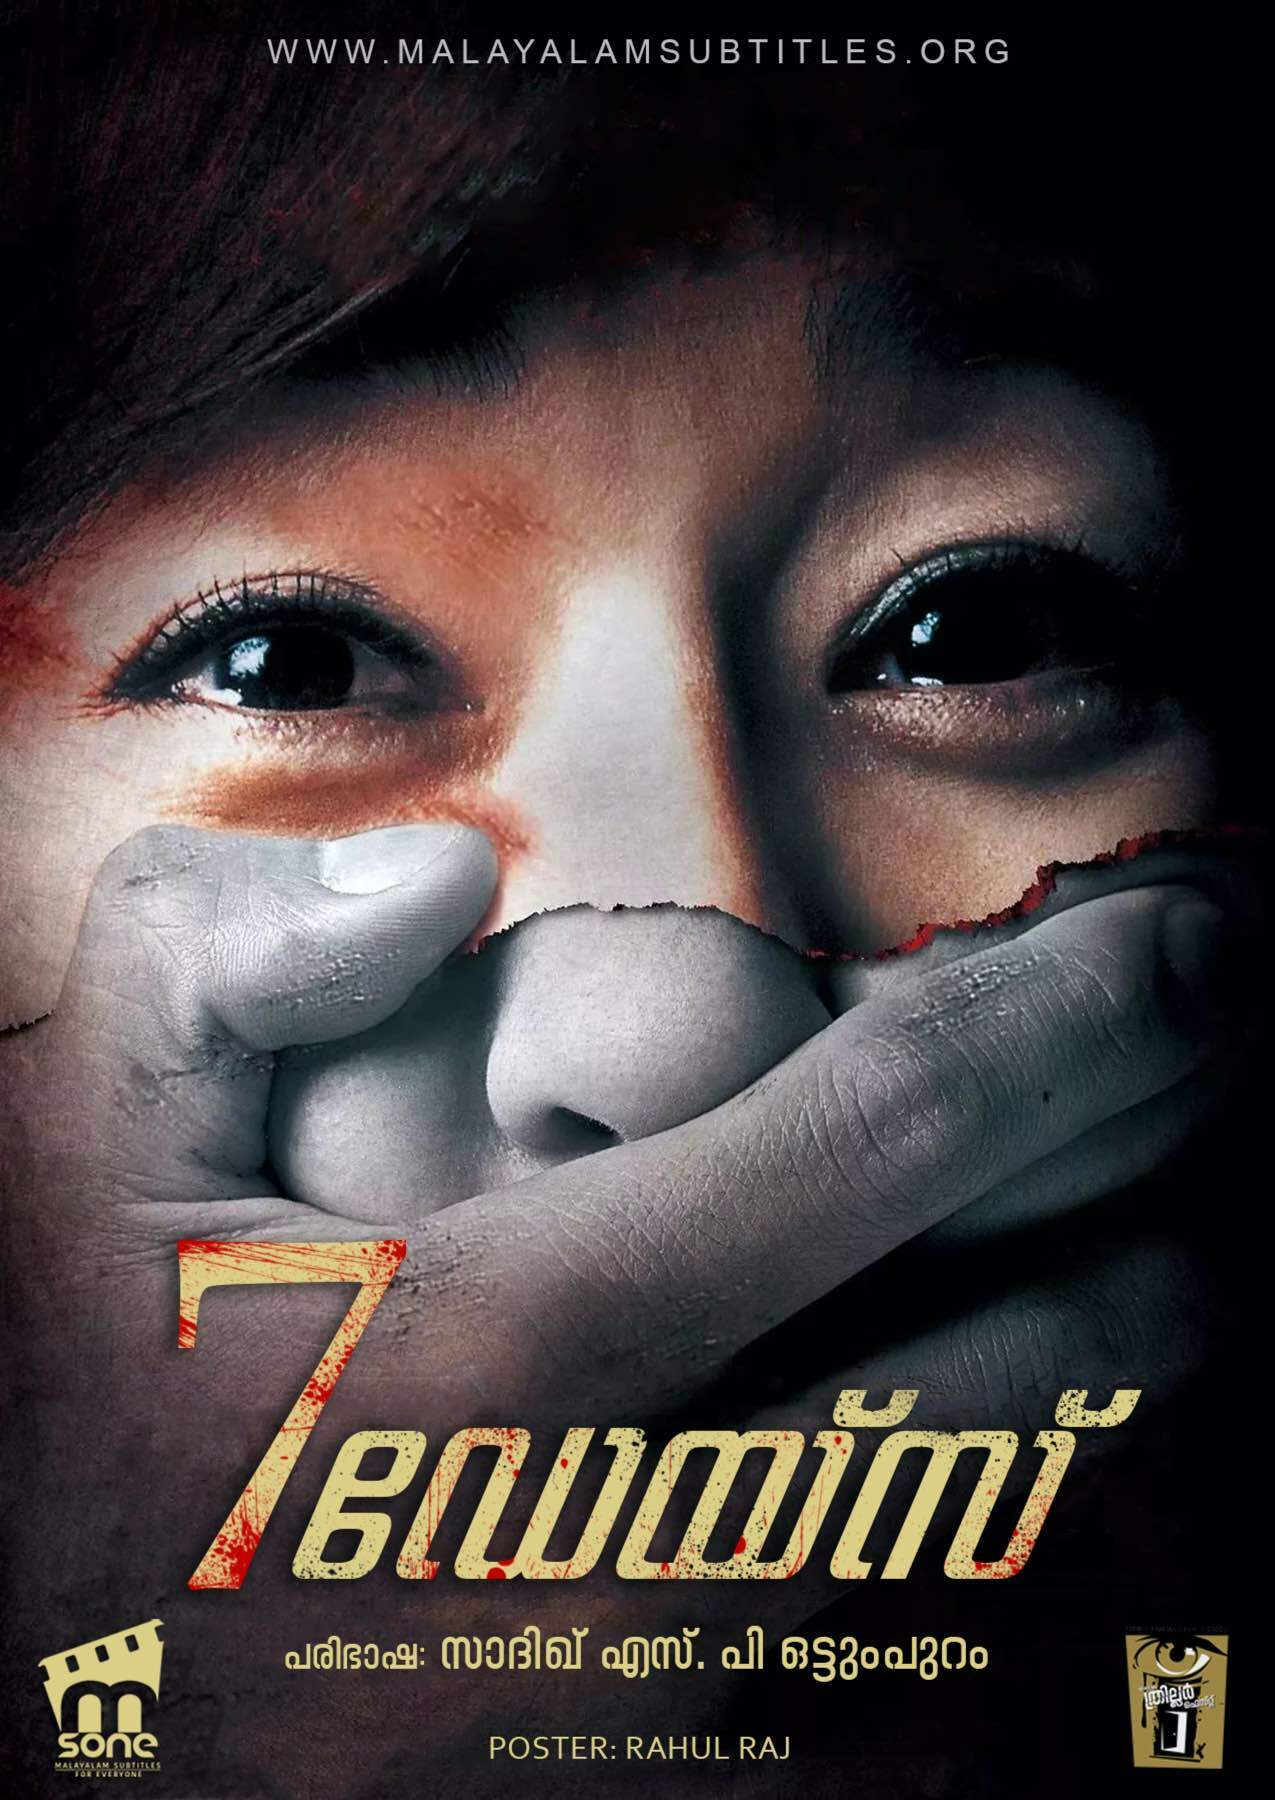 Семь дней 2007. Семь дней / Sebeun Deijeu (Seven Days) / 2007. Корейские триллеры про маньяков.